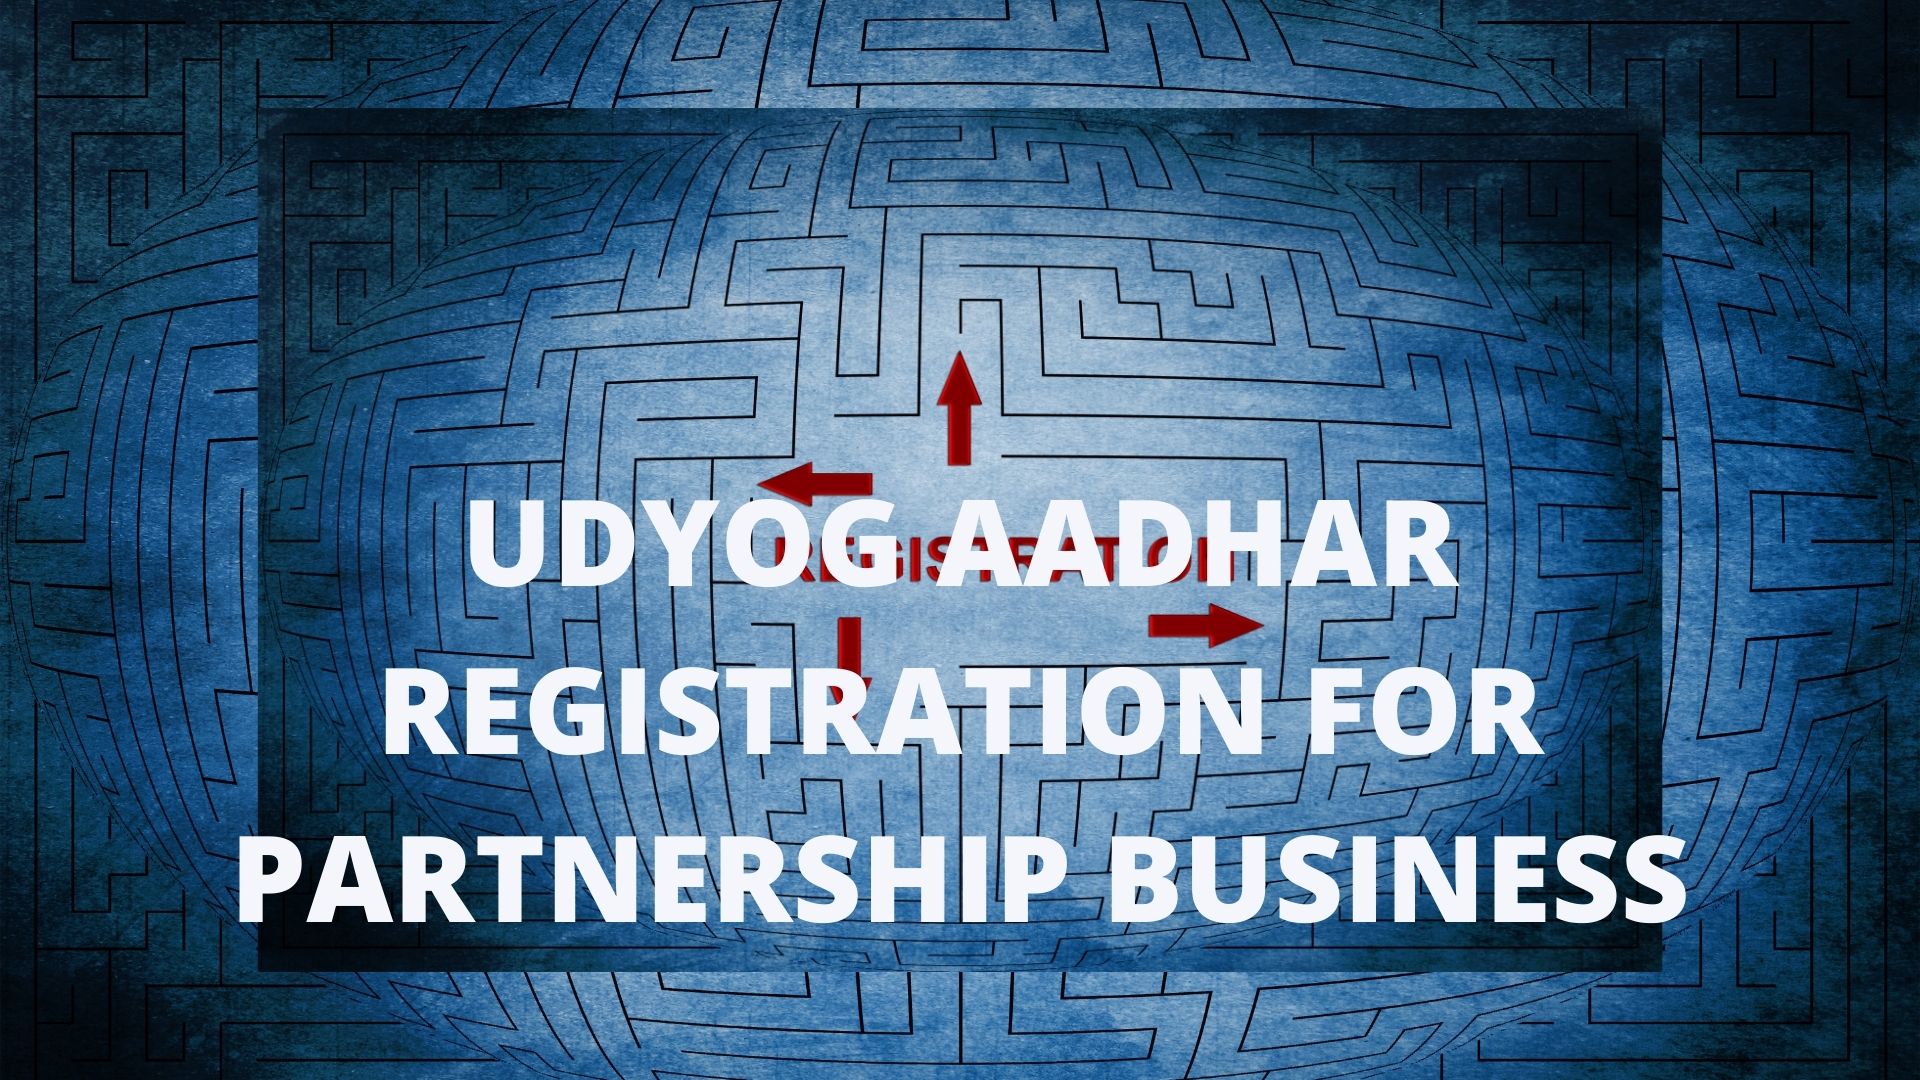 UDYOG AADHAR REGISTRATION FOR PARTNERSHIP BUSINESS